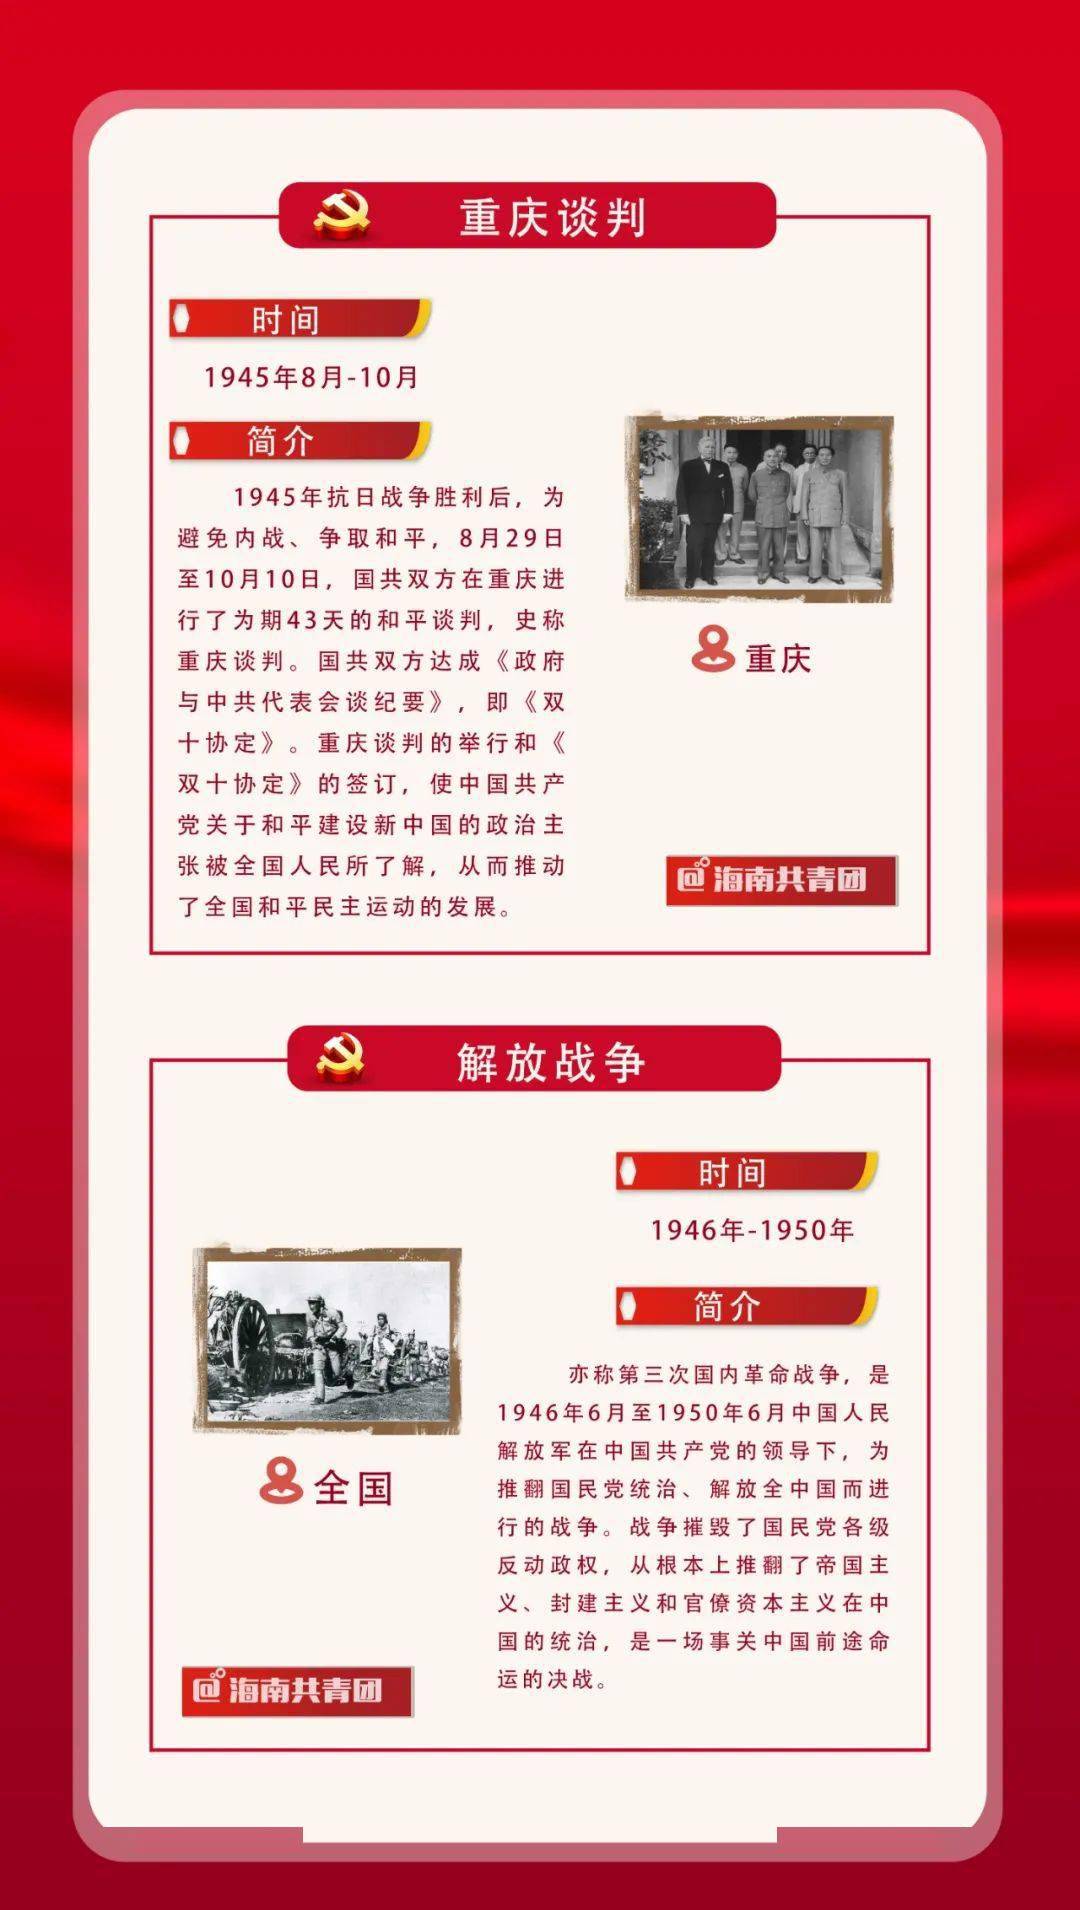 党史"青"课堂丨中共党史大事记——新民主主义革命时期